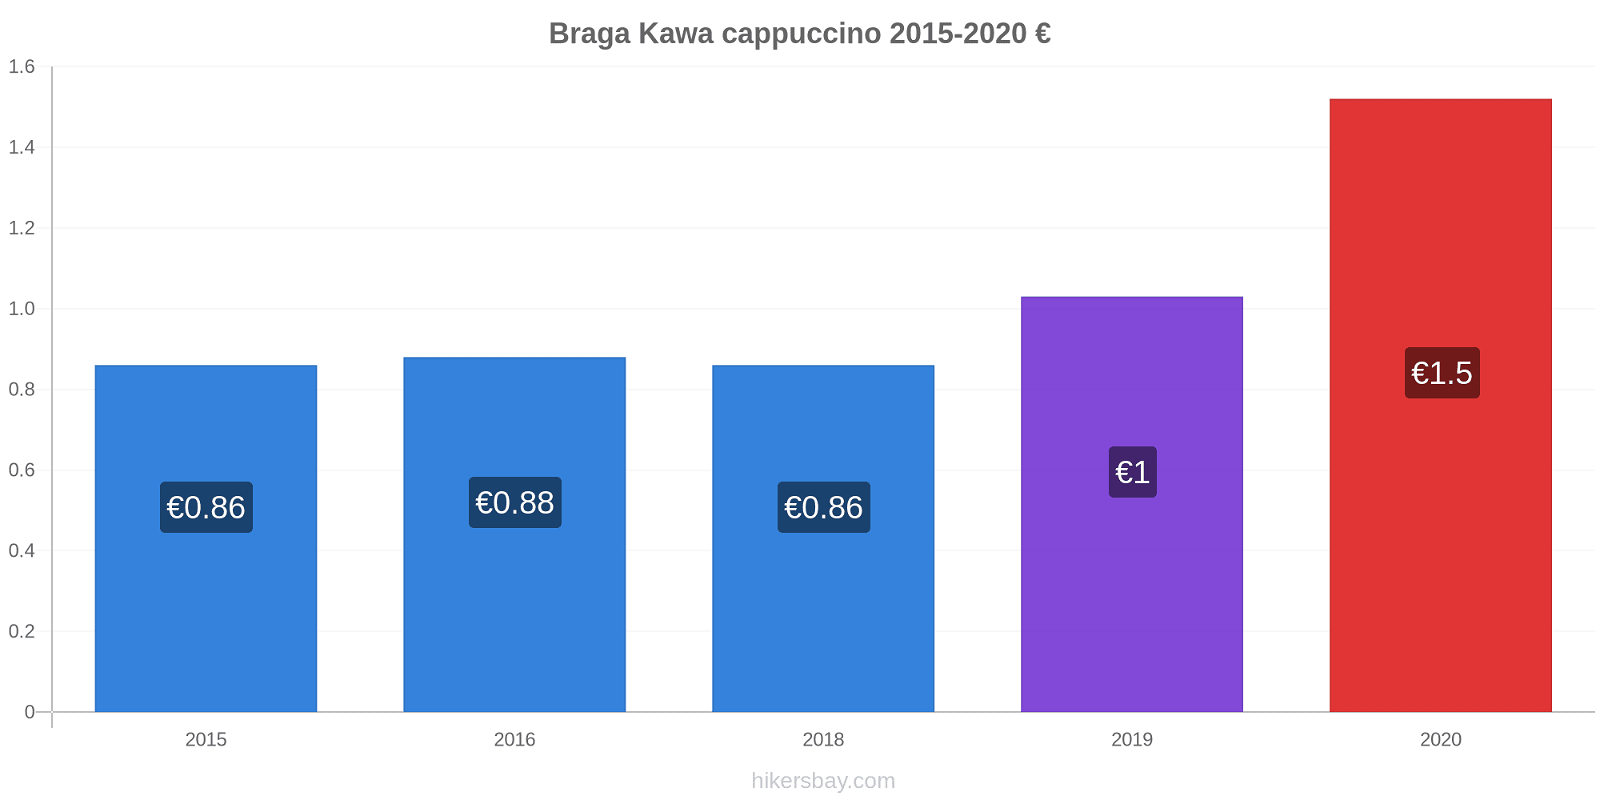 Braga zmiany cen Kawa cappuccino hikersbay.com